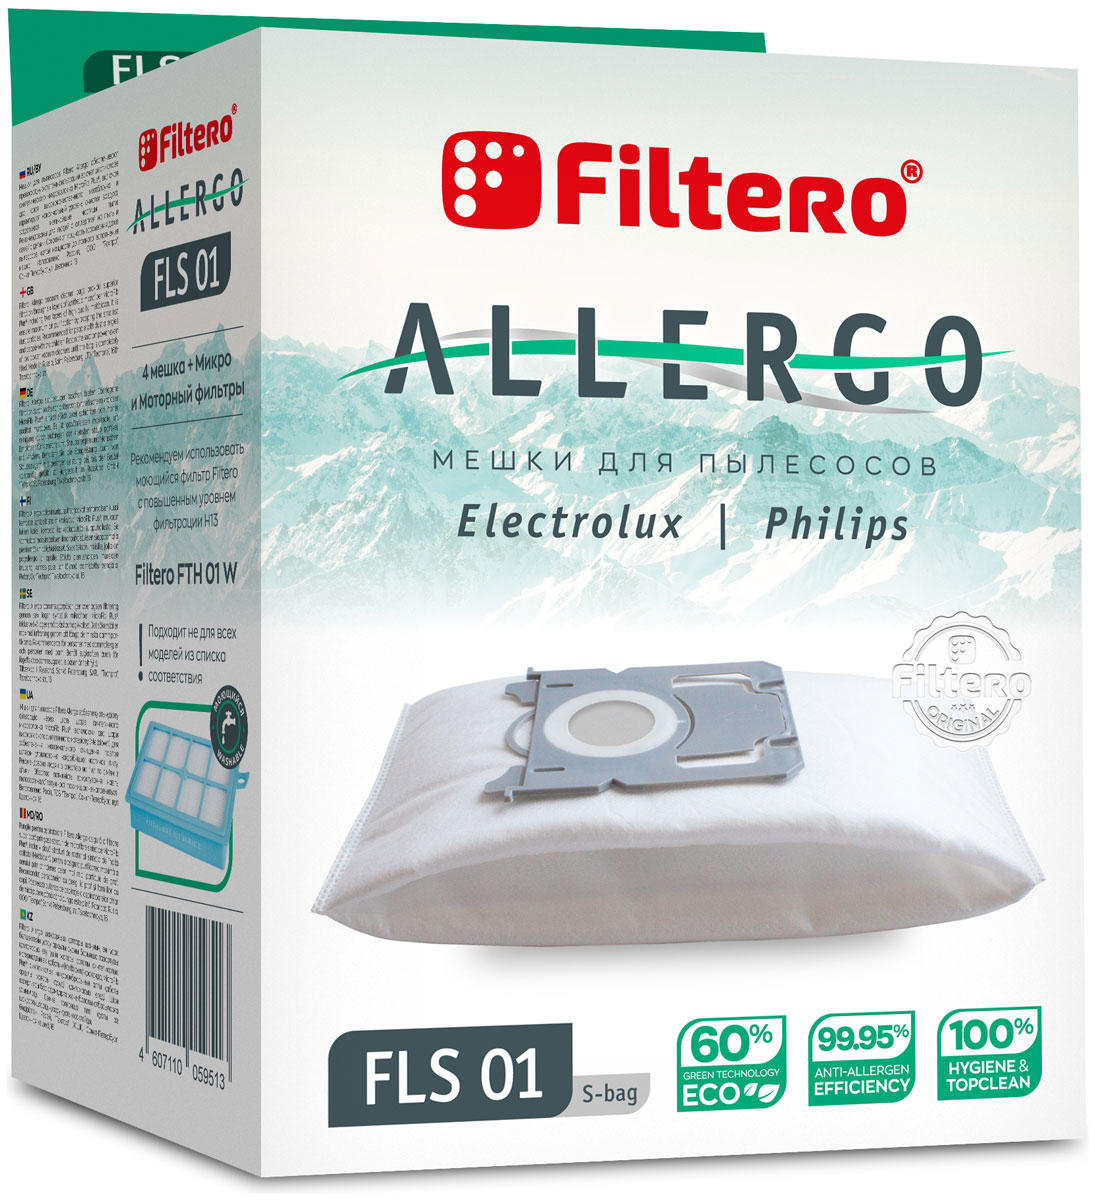 пылесборники filtero fls 01 4 allergo для electrolux philips Пылесборники Filtero FLS 01 S-bag Allergo 4 шт. + моторный фильтр и микрофильтр